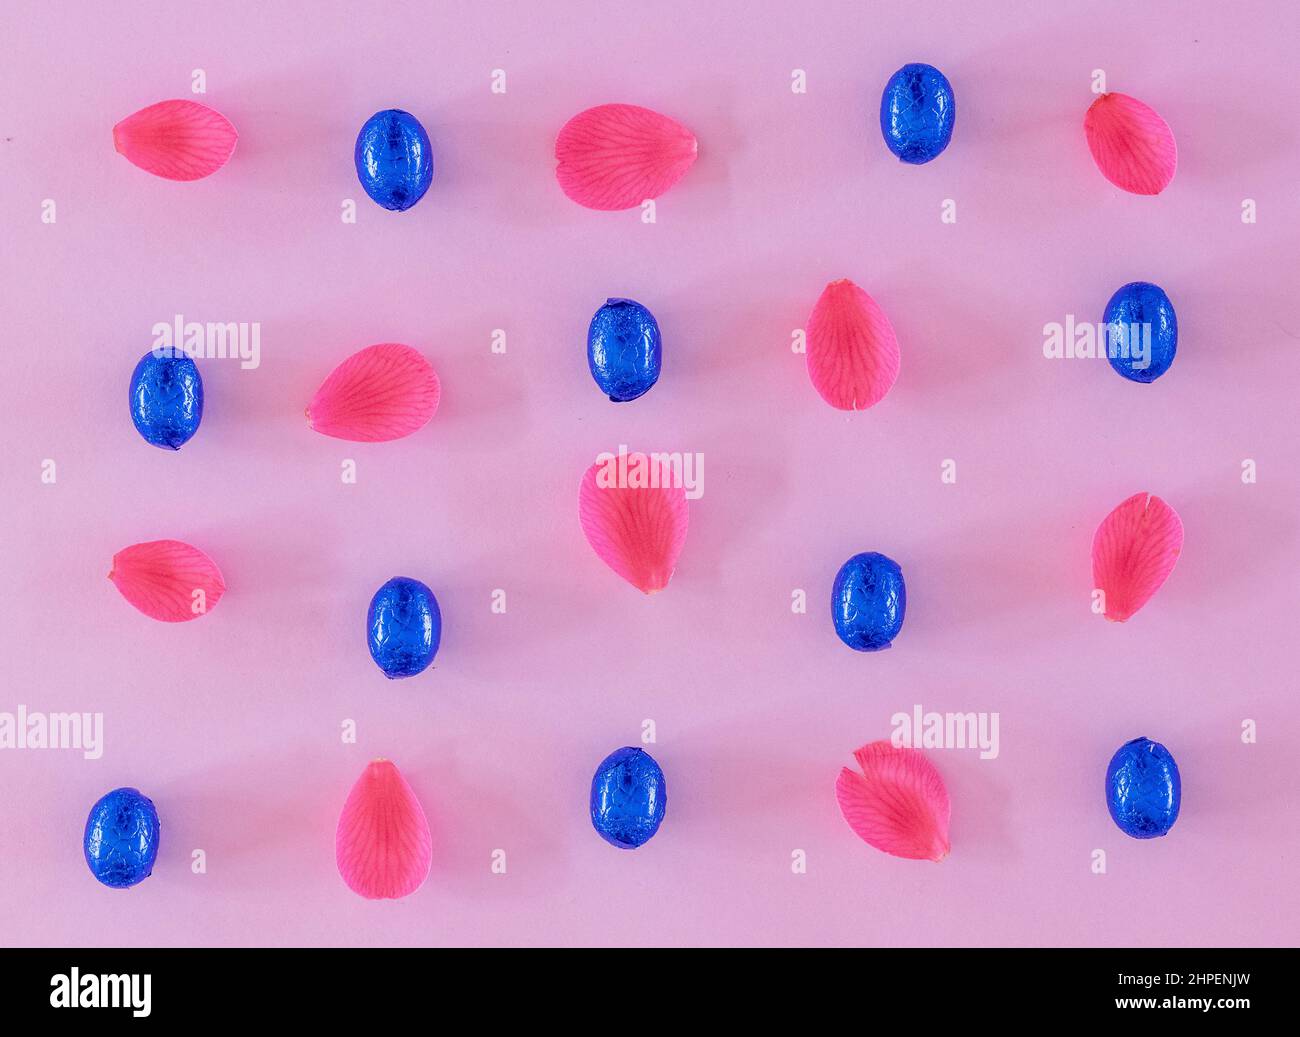 Motif oeufs de Pâques rose et bleu plat lay photographique Banque D'Images